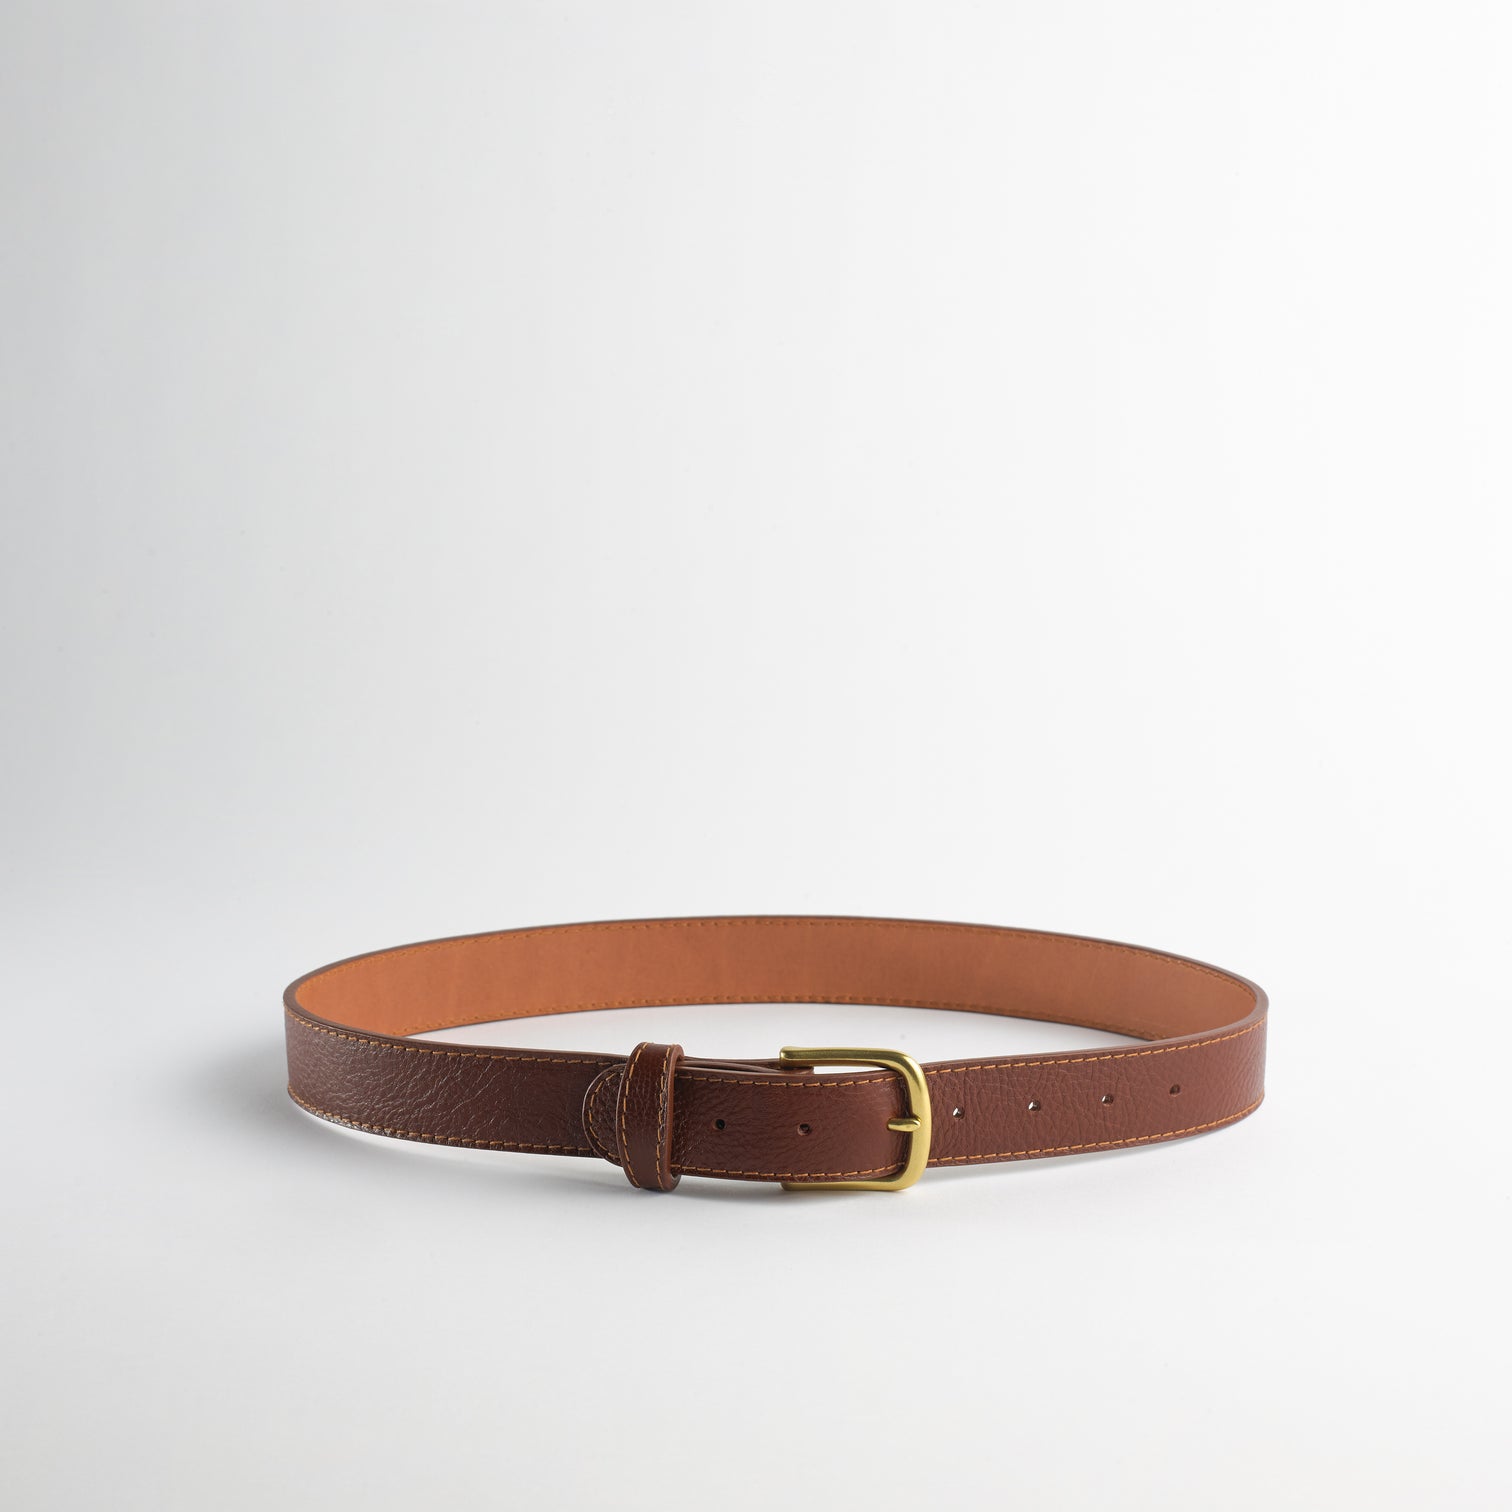 SIMPLE BELT II (wide) - Full Grain Leather Belt